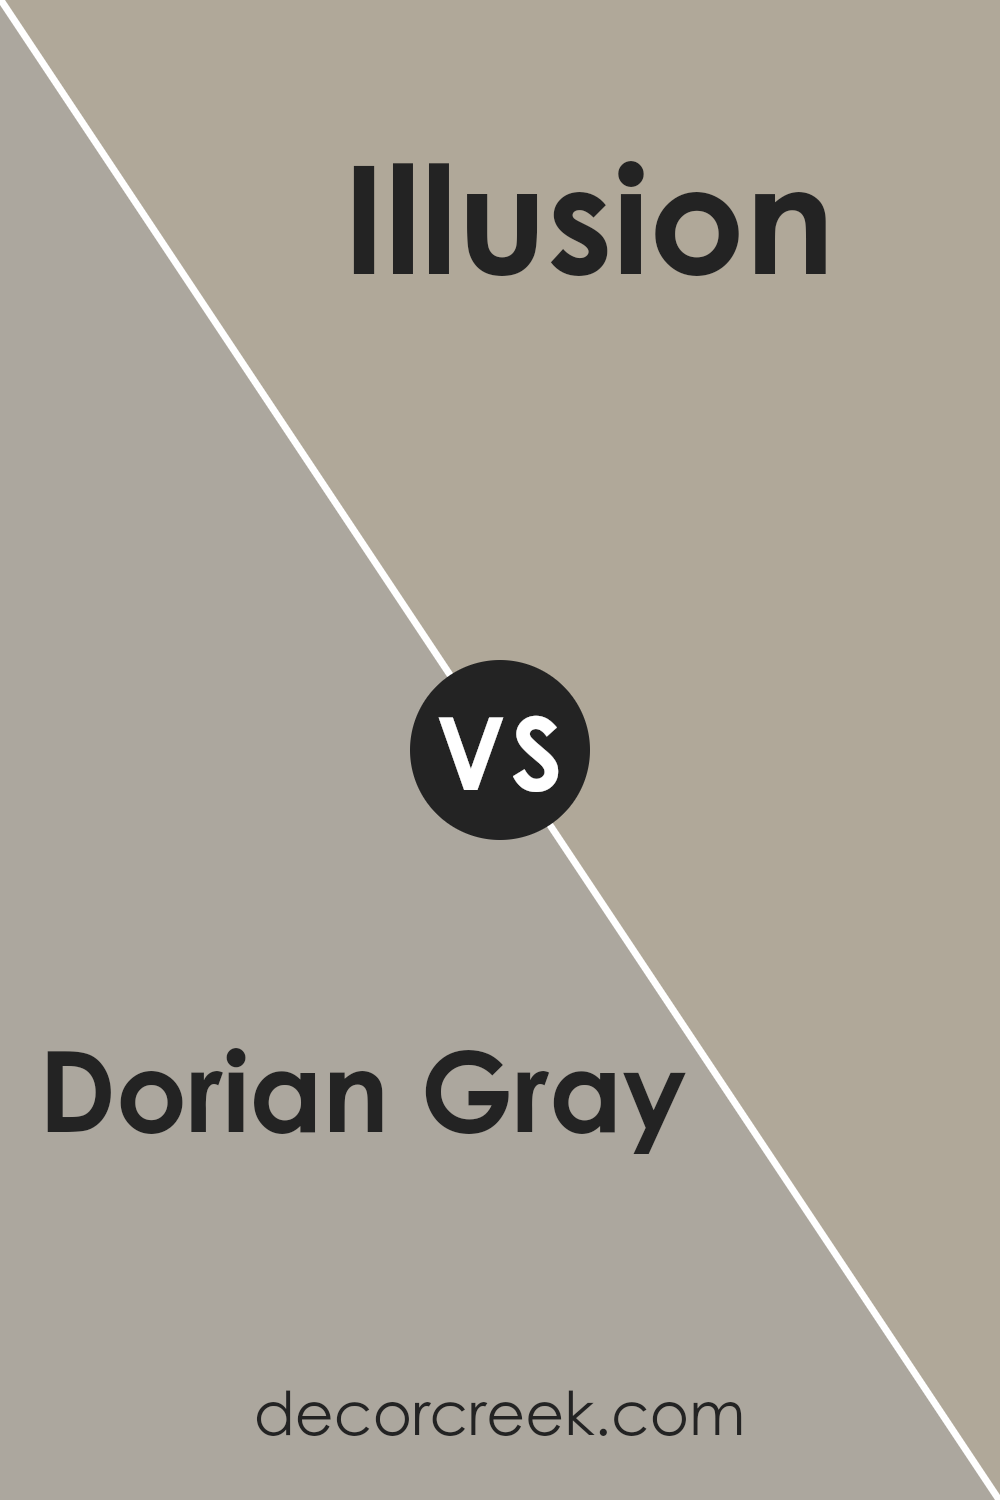 dorian_gray_sw_7017_vs_illusion_sw_9592